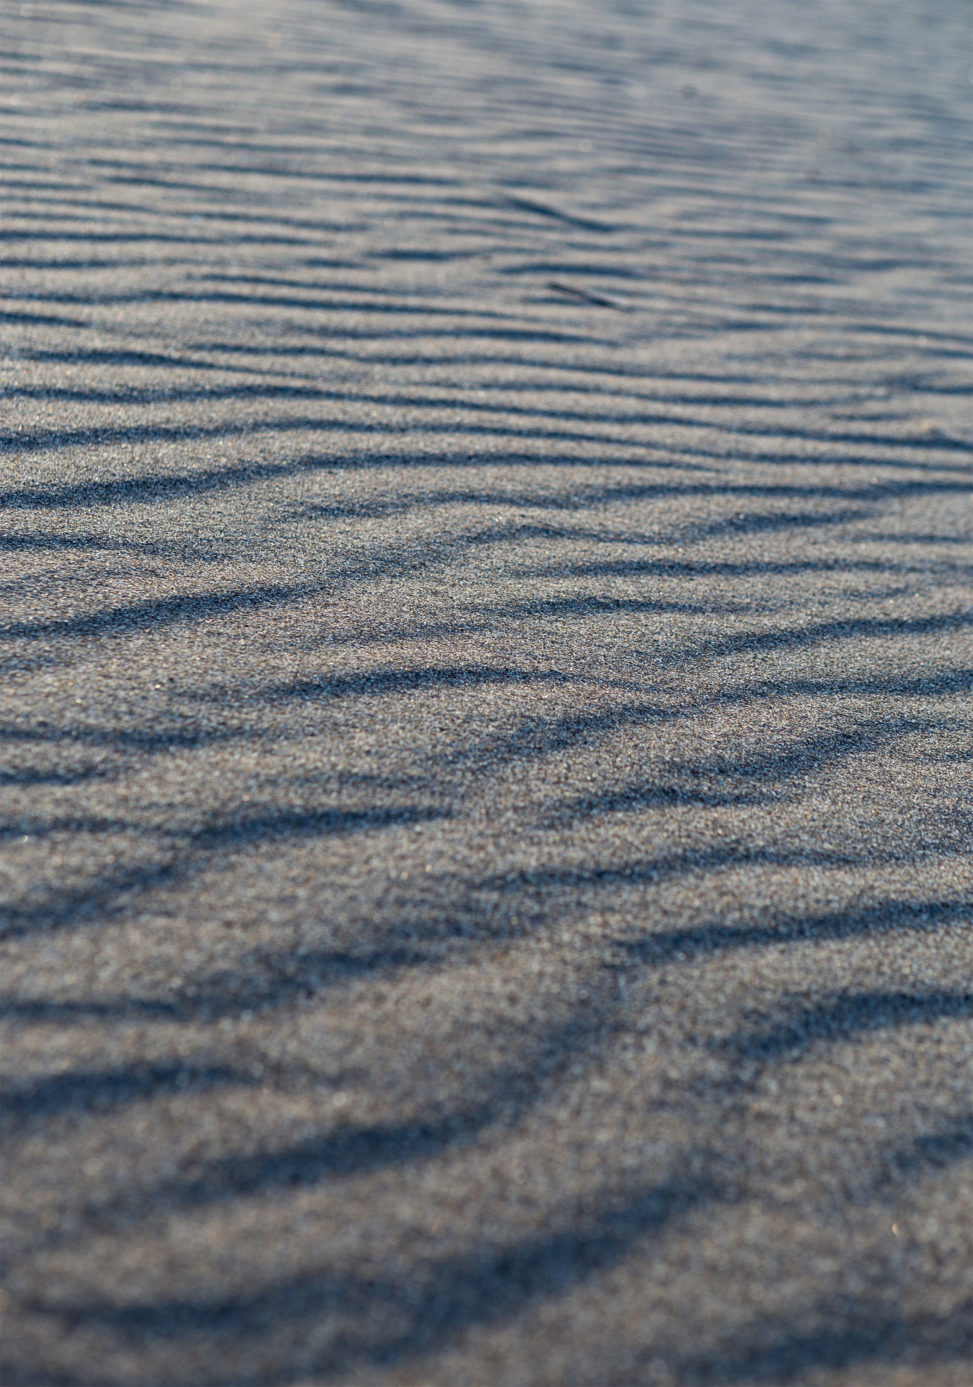 砂浜・砂丘のテクスチャーの写真素材